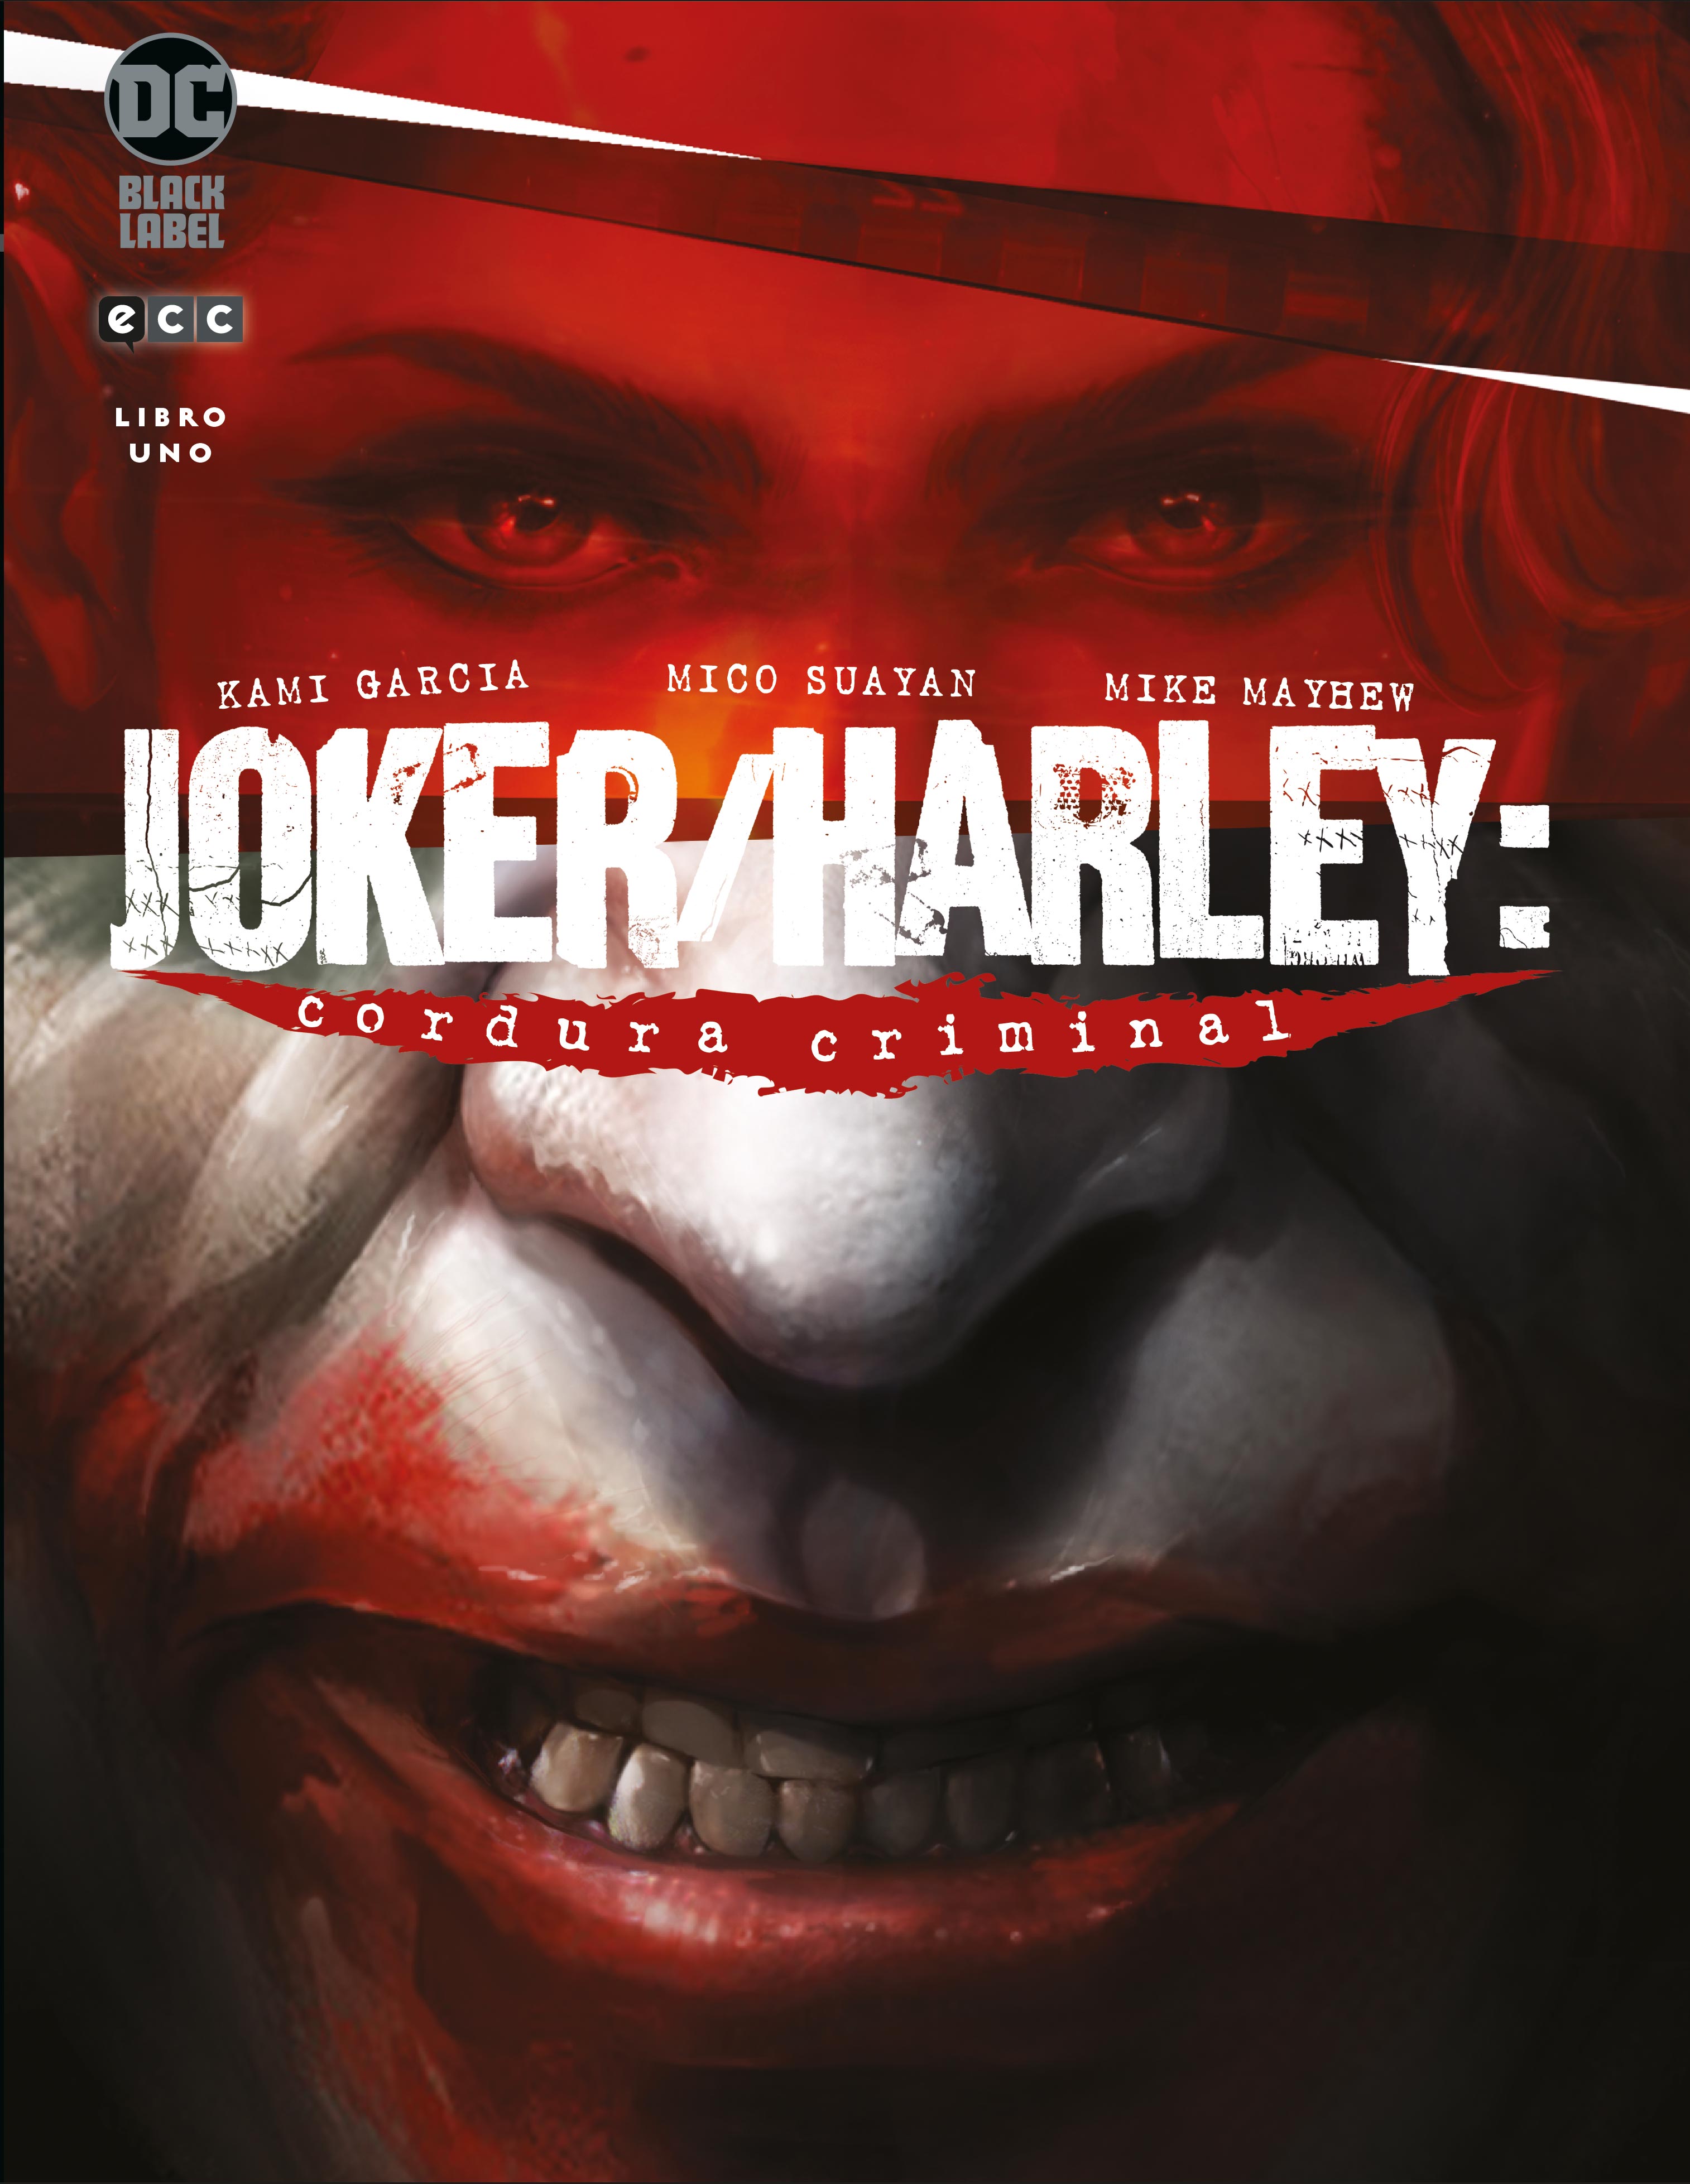 Joker/Harley: Cordura Criminal vol. 01 de 3 - ECC Cómics